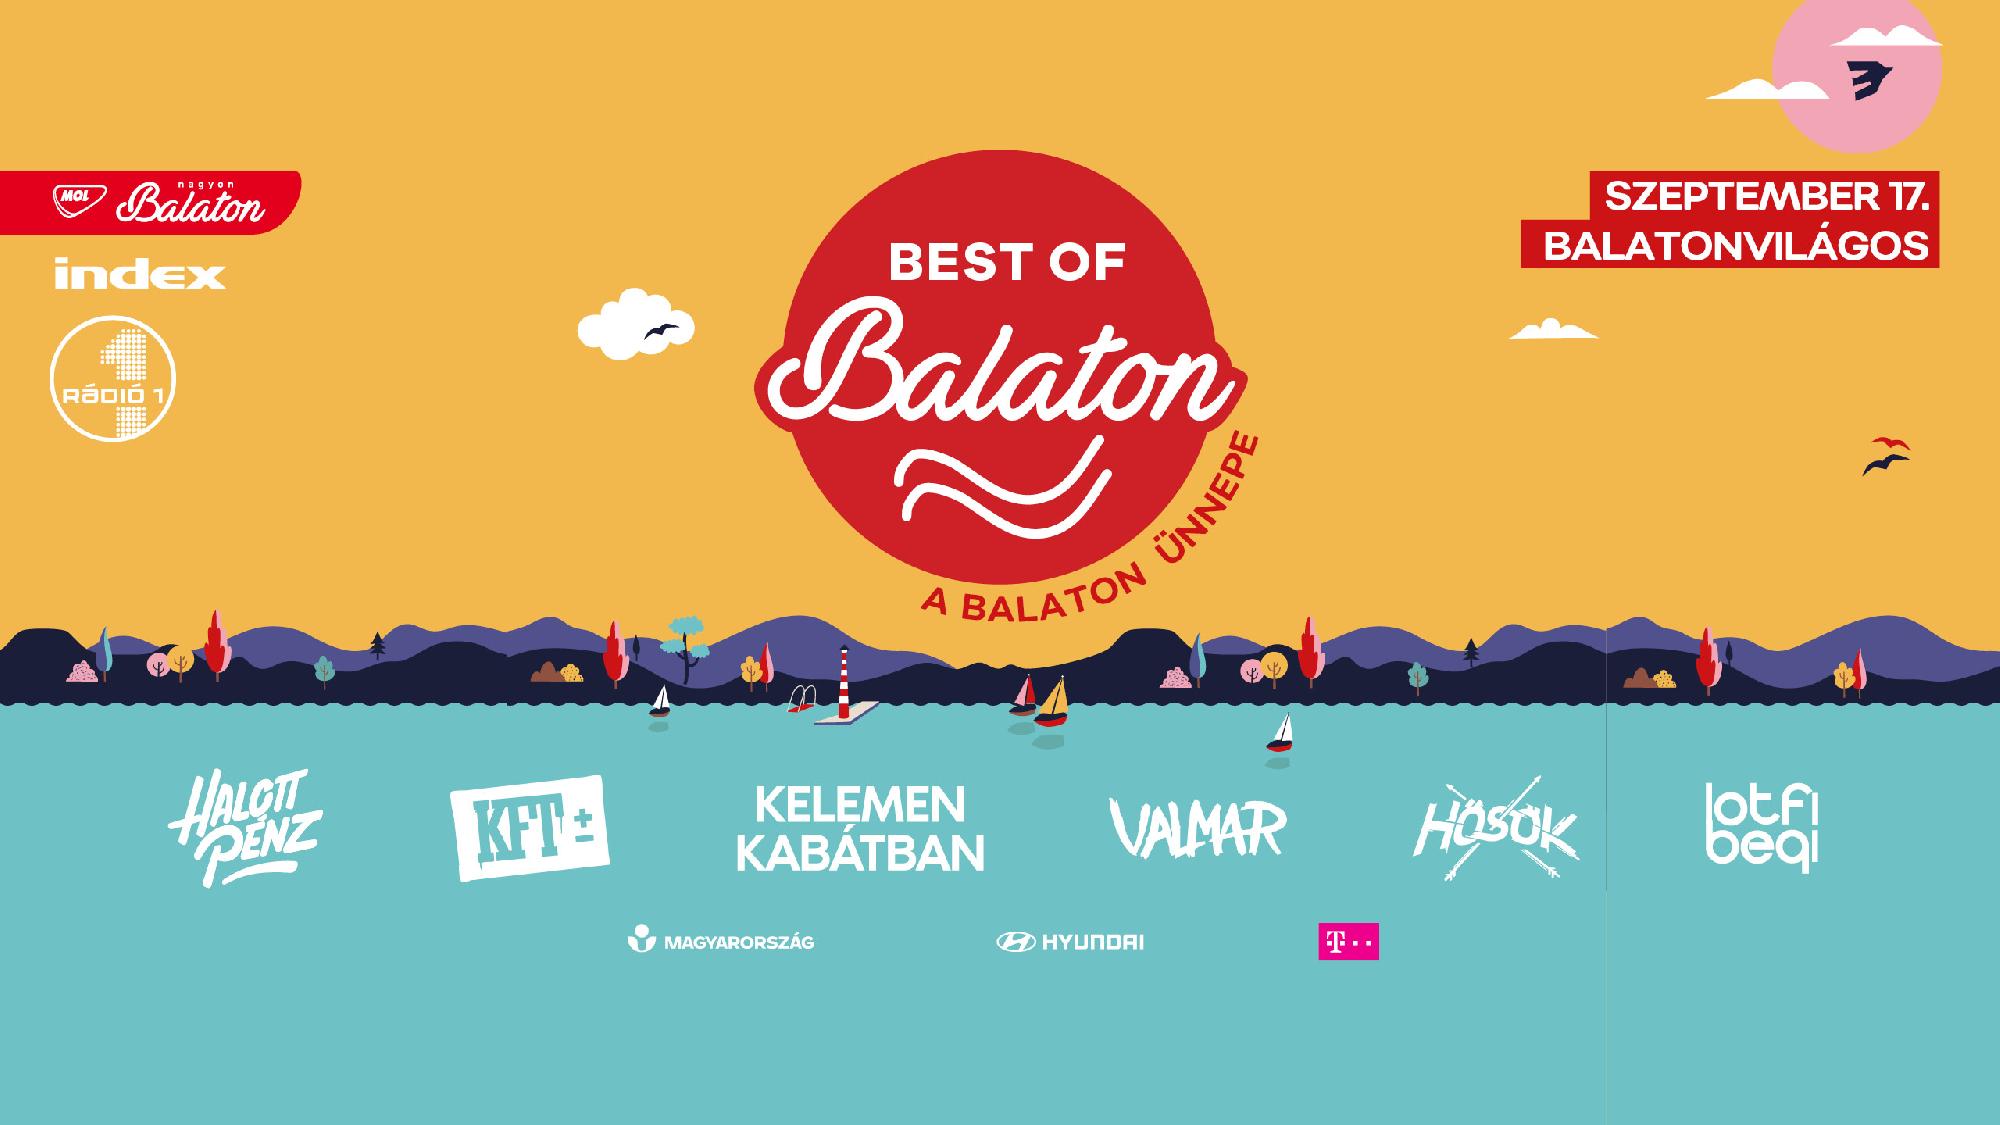 Egy napos fesztivállal, a Balaton Ünnepével zárul az idei Best of Balaton